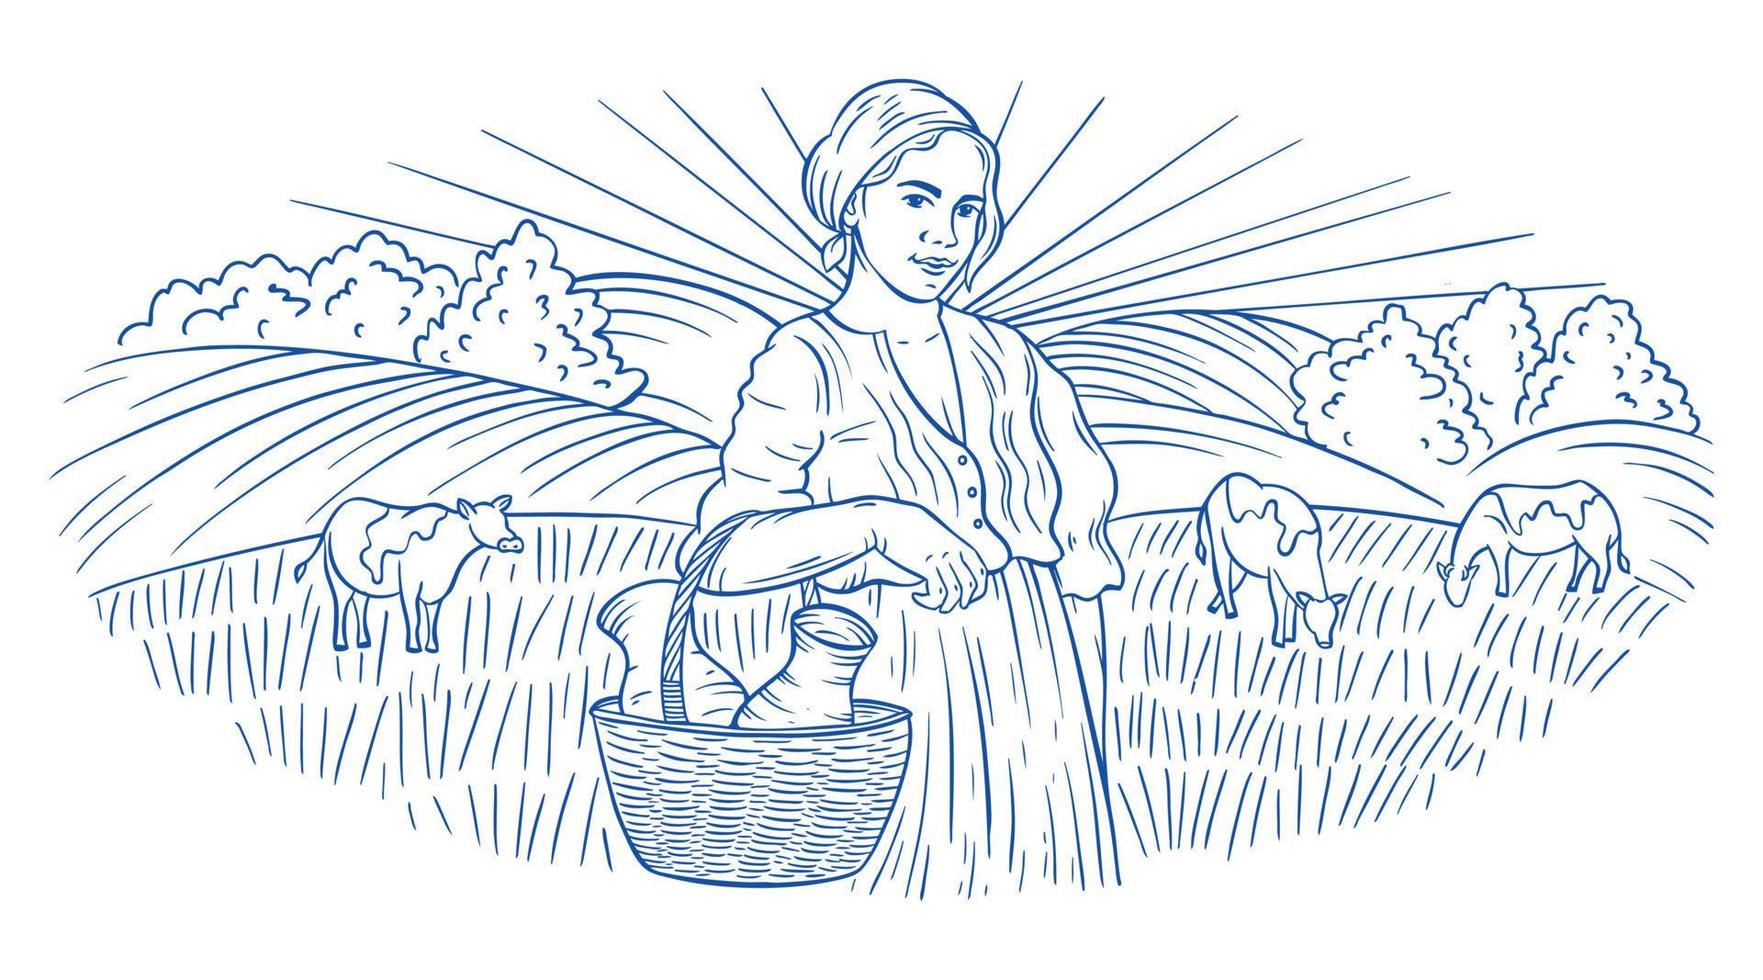 uma aldeia e uma menina com campos e sol. paisagem rural com uma jovem e árvores. a garota segura espigas de trigo ou centeio. estilo de gravura à mão vetor